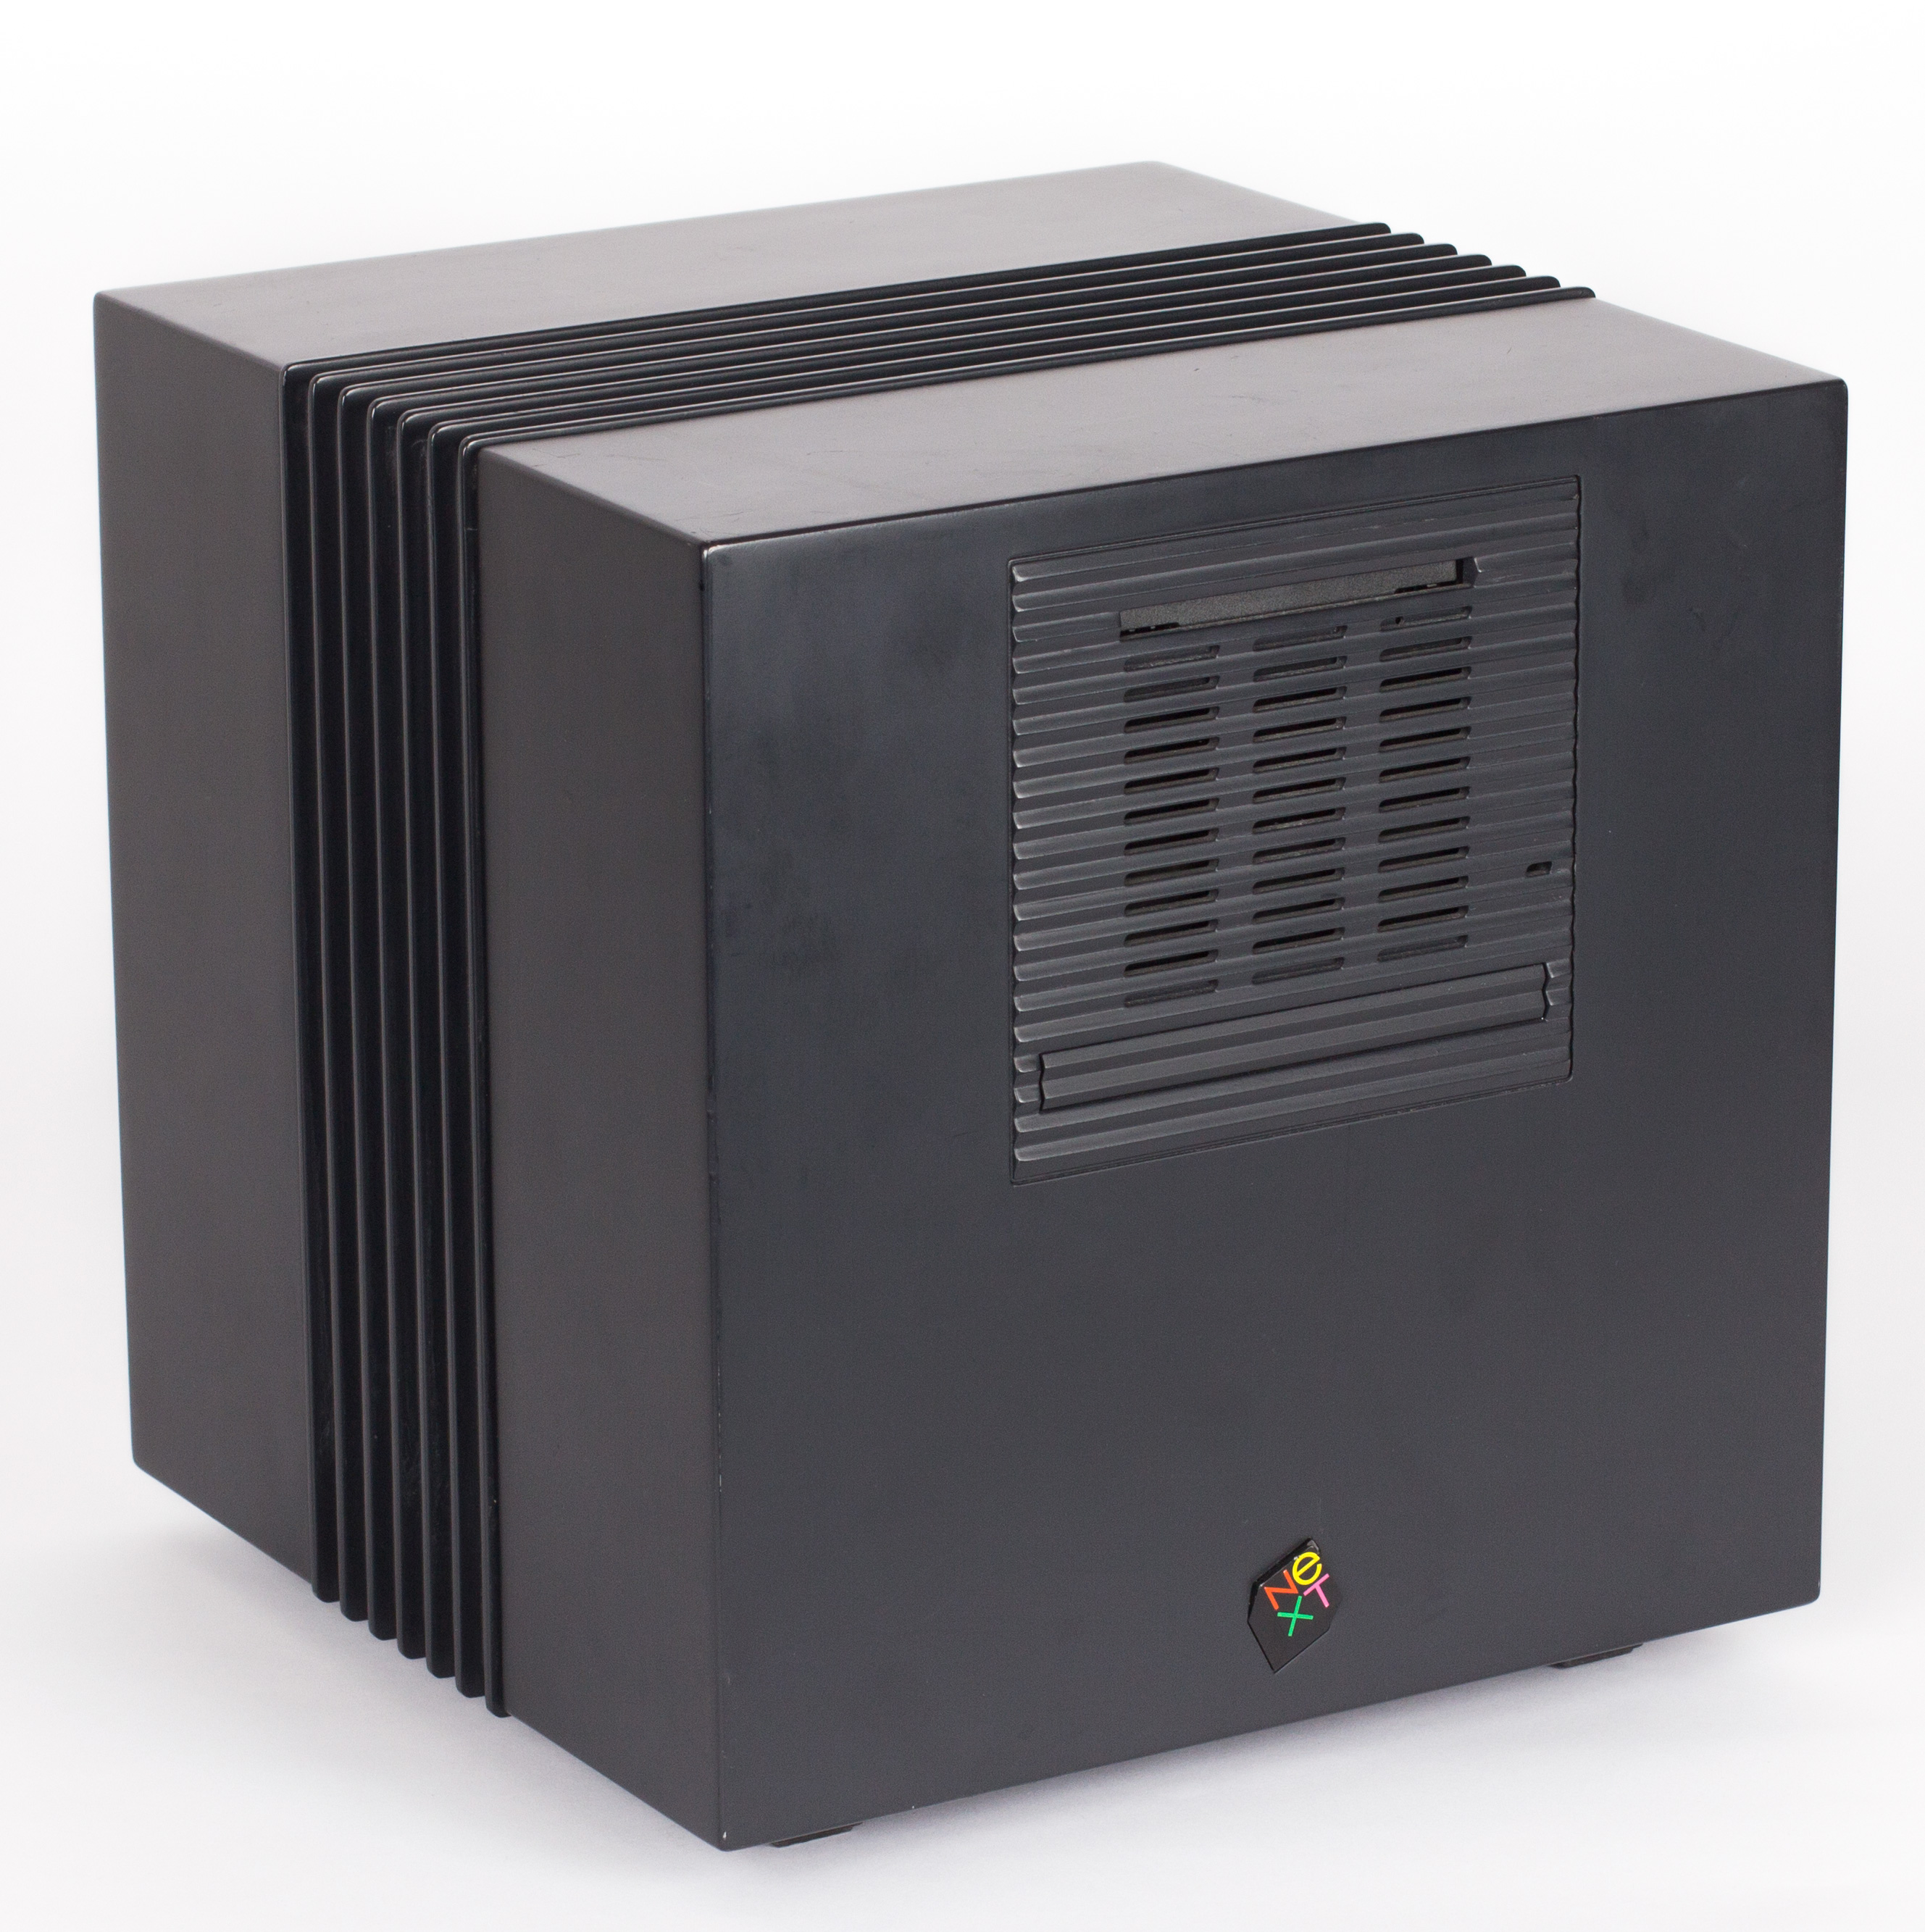 超特価激安 NeXT Computer 初代ネクストキューブnext cube N1000 